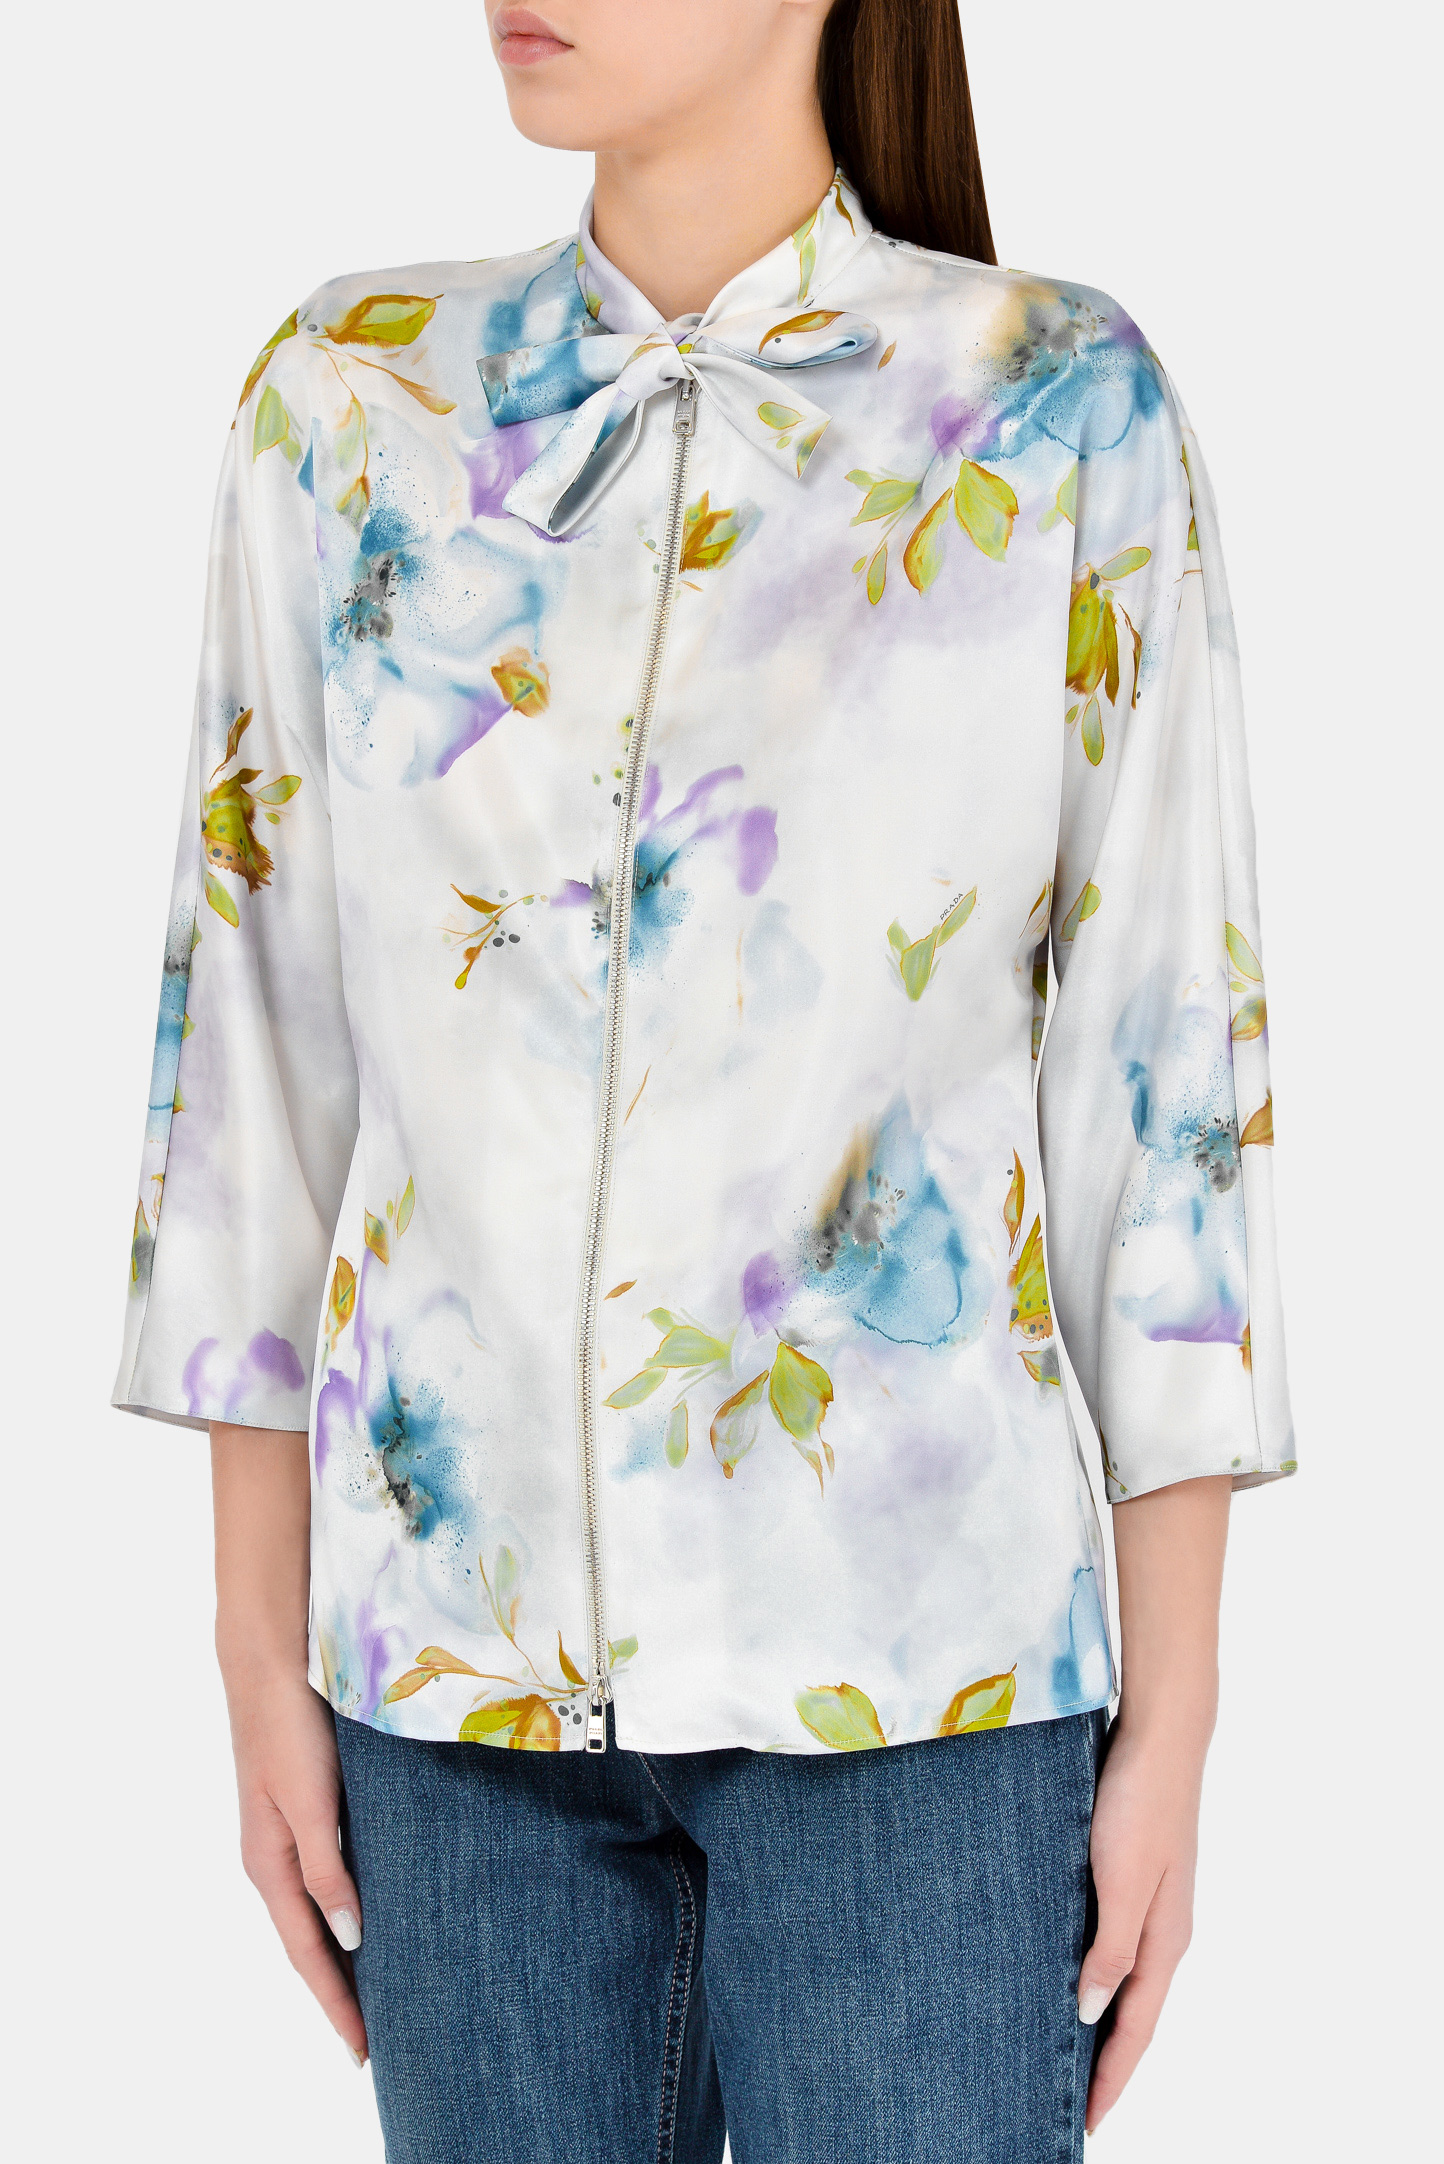 Блуза PRADA P494E S 211, цвет: Разноцветный, Женский